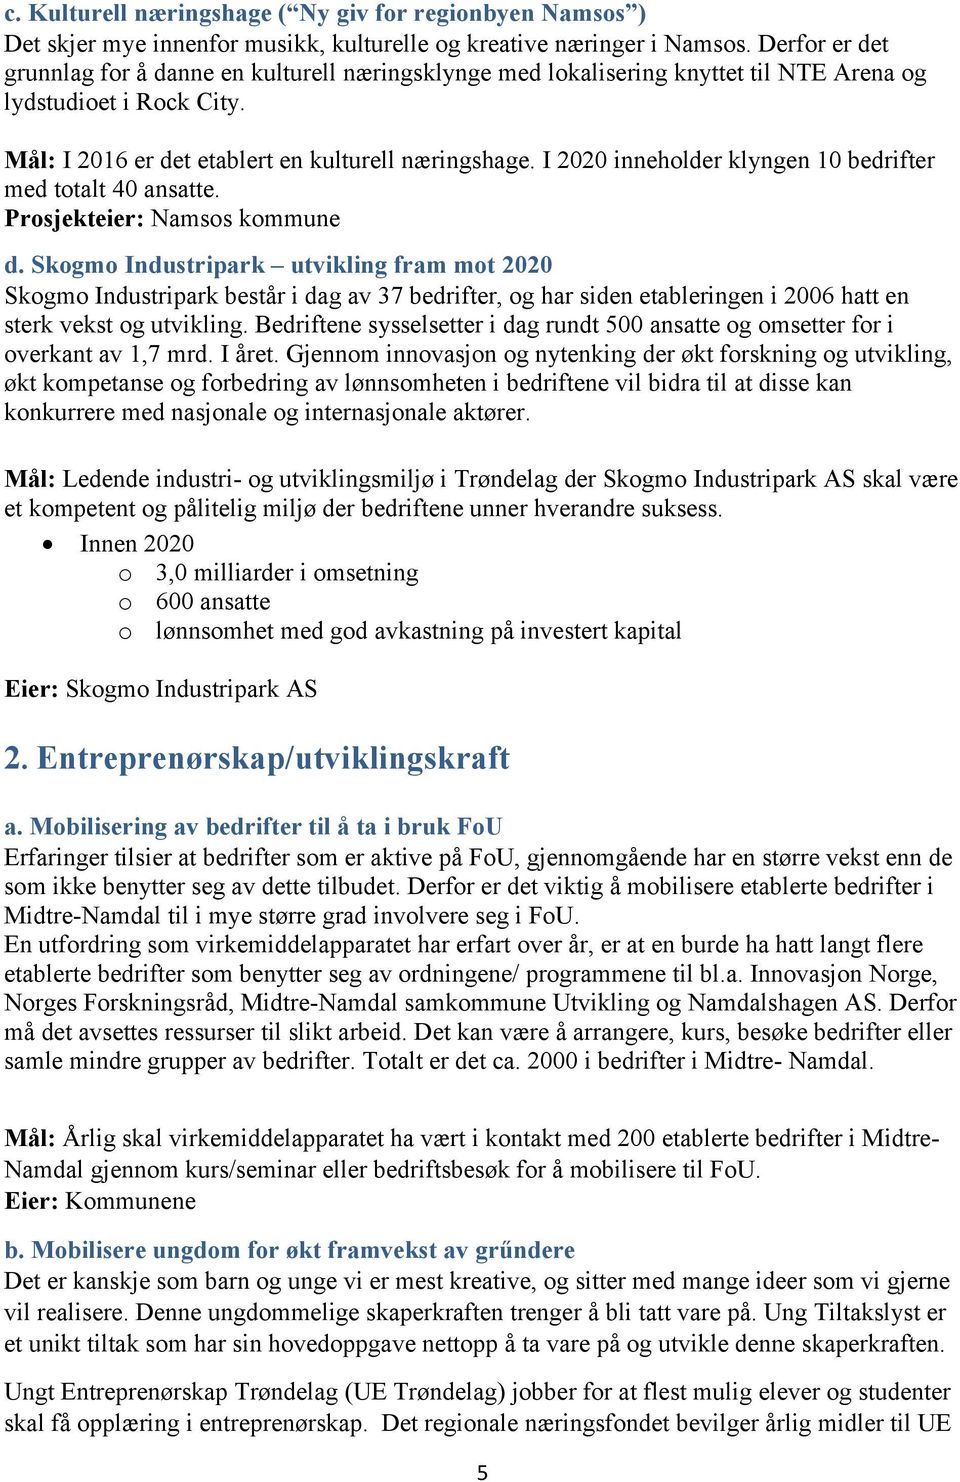 I 2020 inneholder klyngen 10 bedrifter med totalt 40 ansatte. Prosjekteier: Namsos kommune d.